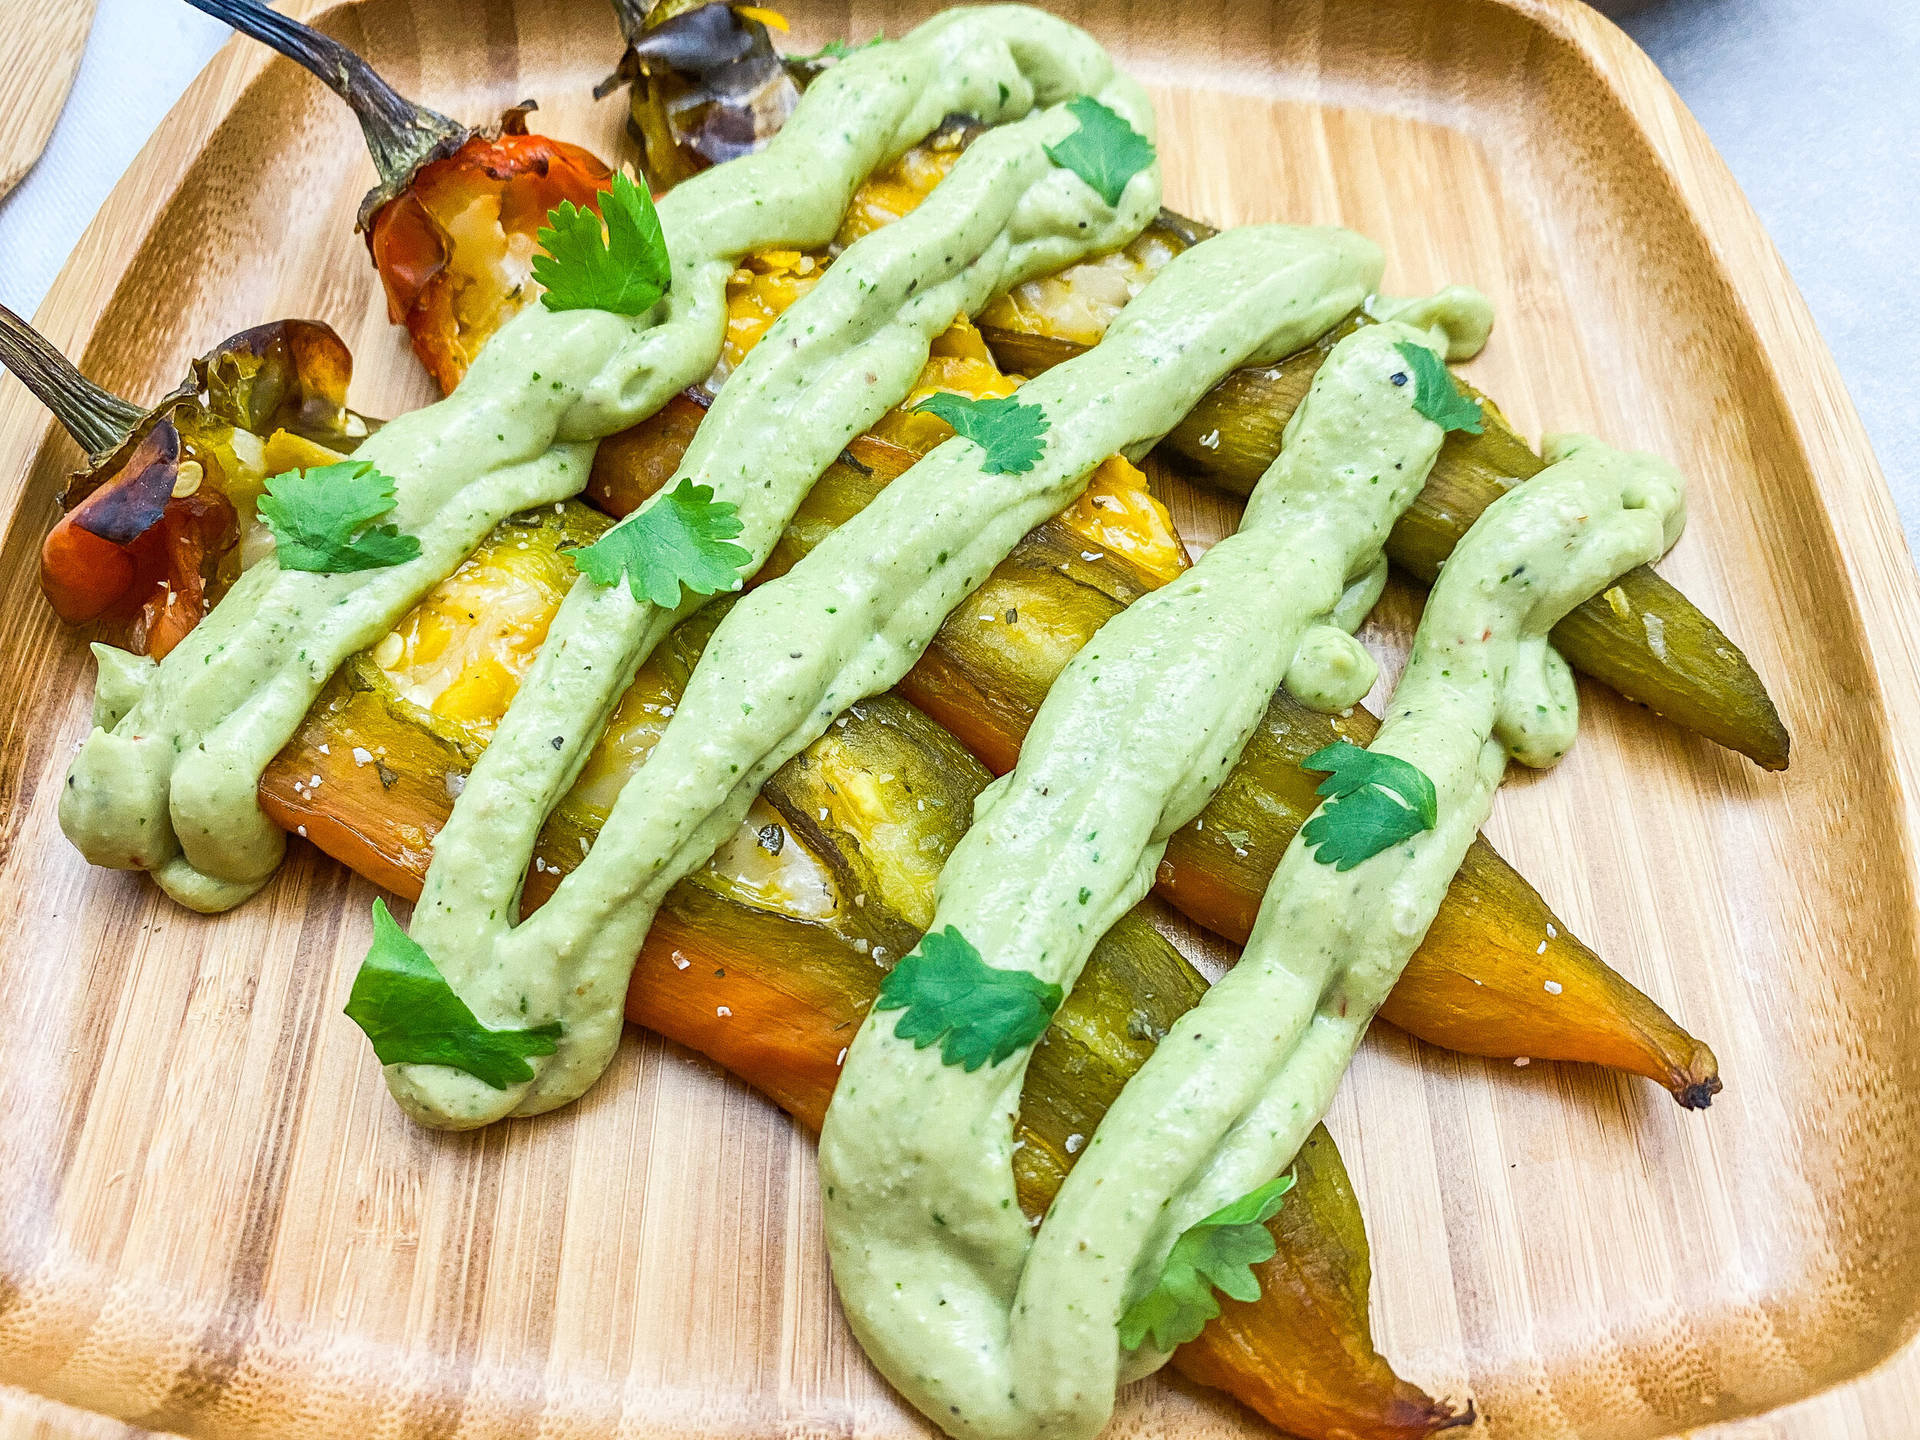 Vegan Chili Relleno With Avocado Crema Picture